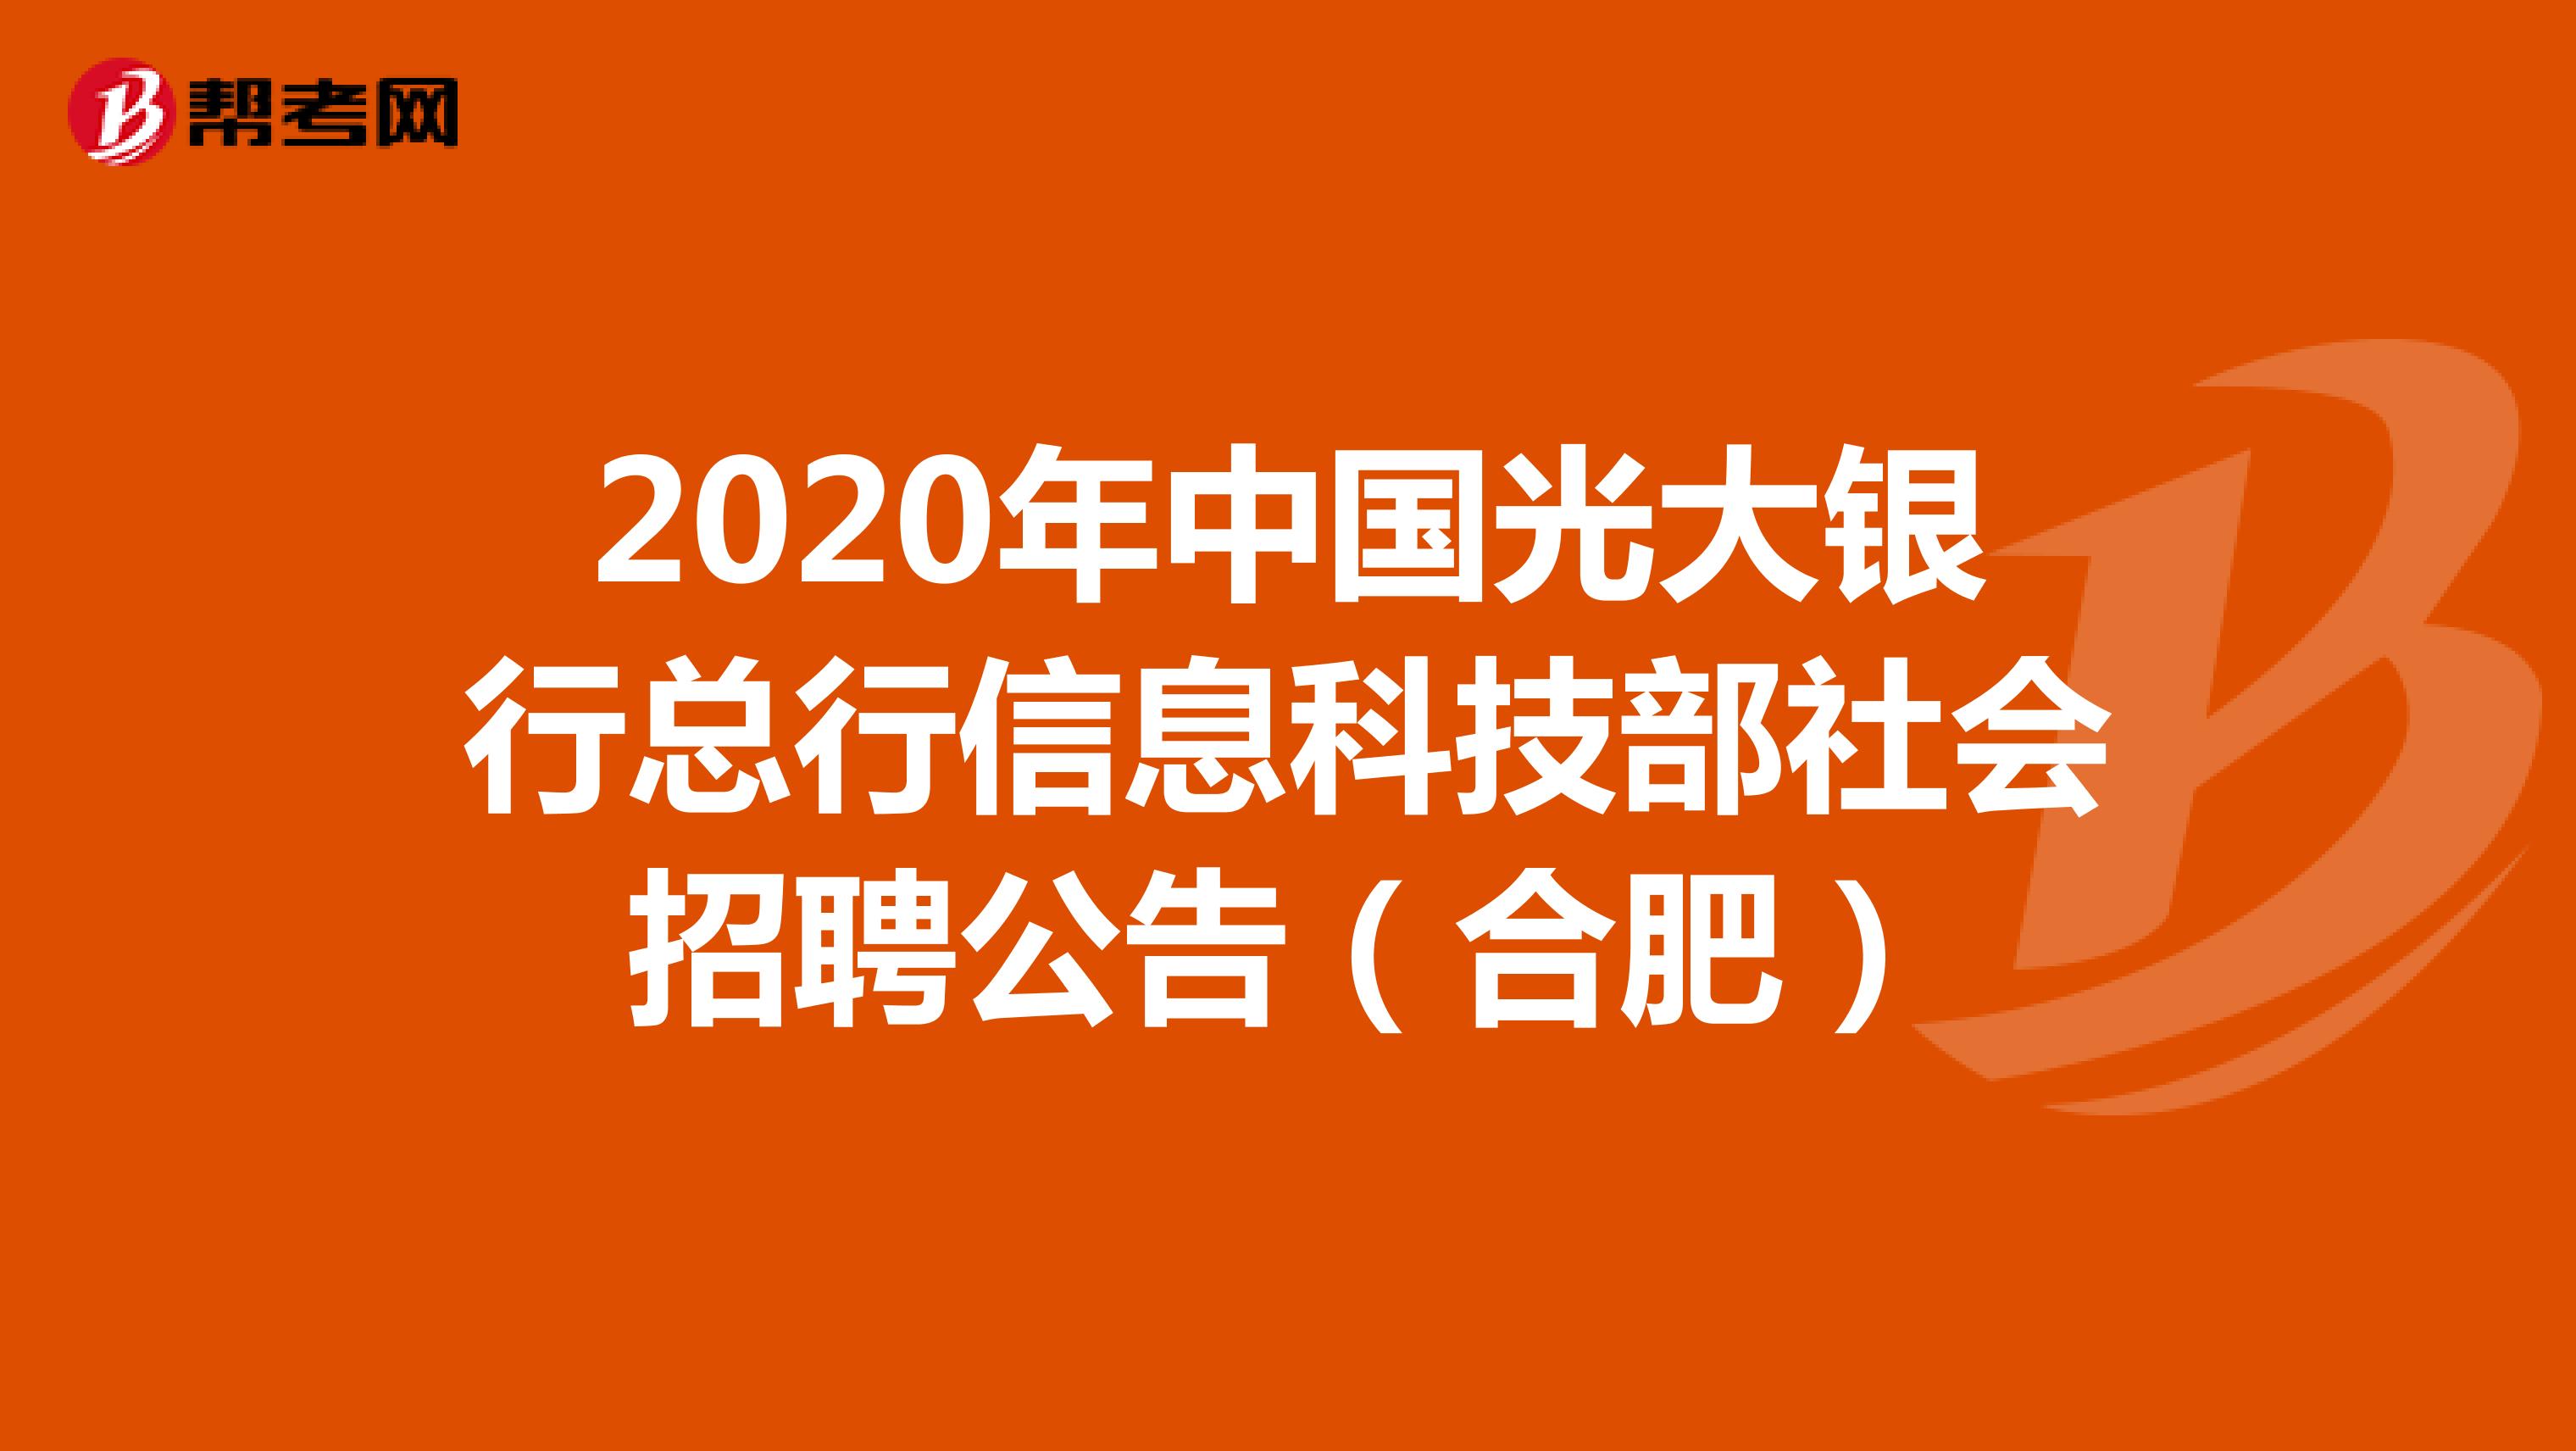 2020年中国光大银行总行信息科技部社会招聘公告（合肥）